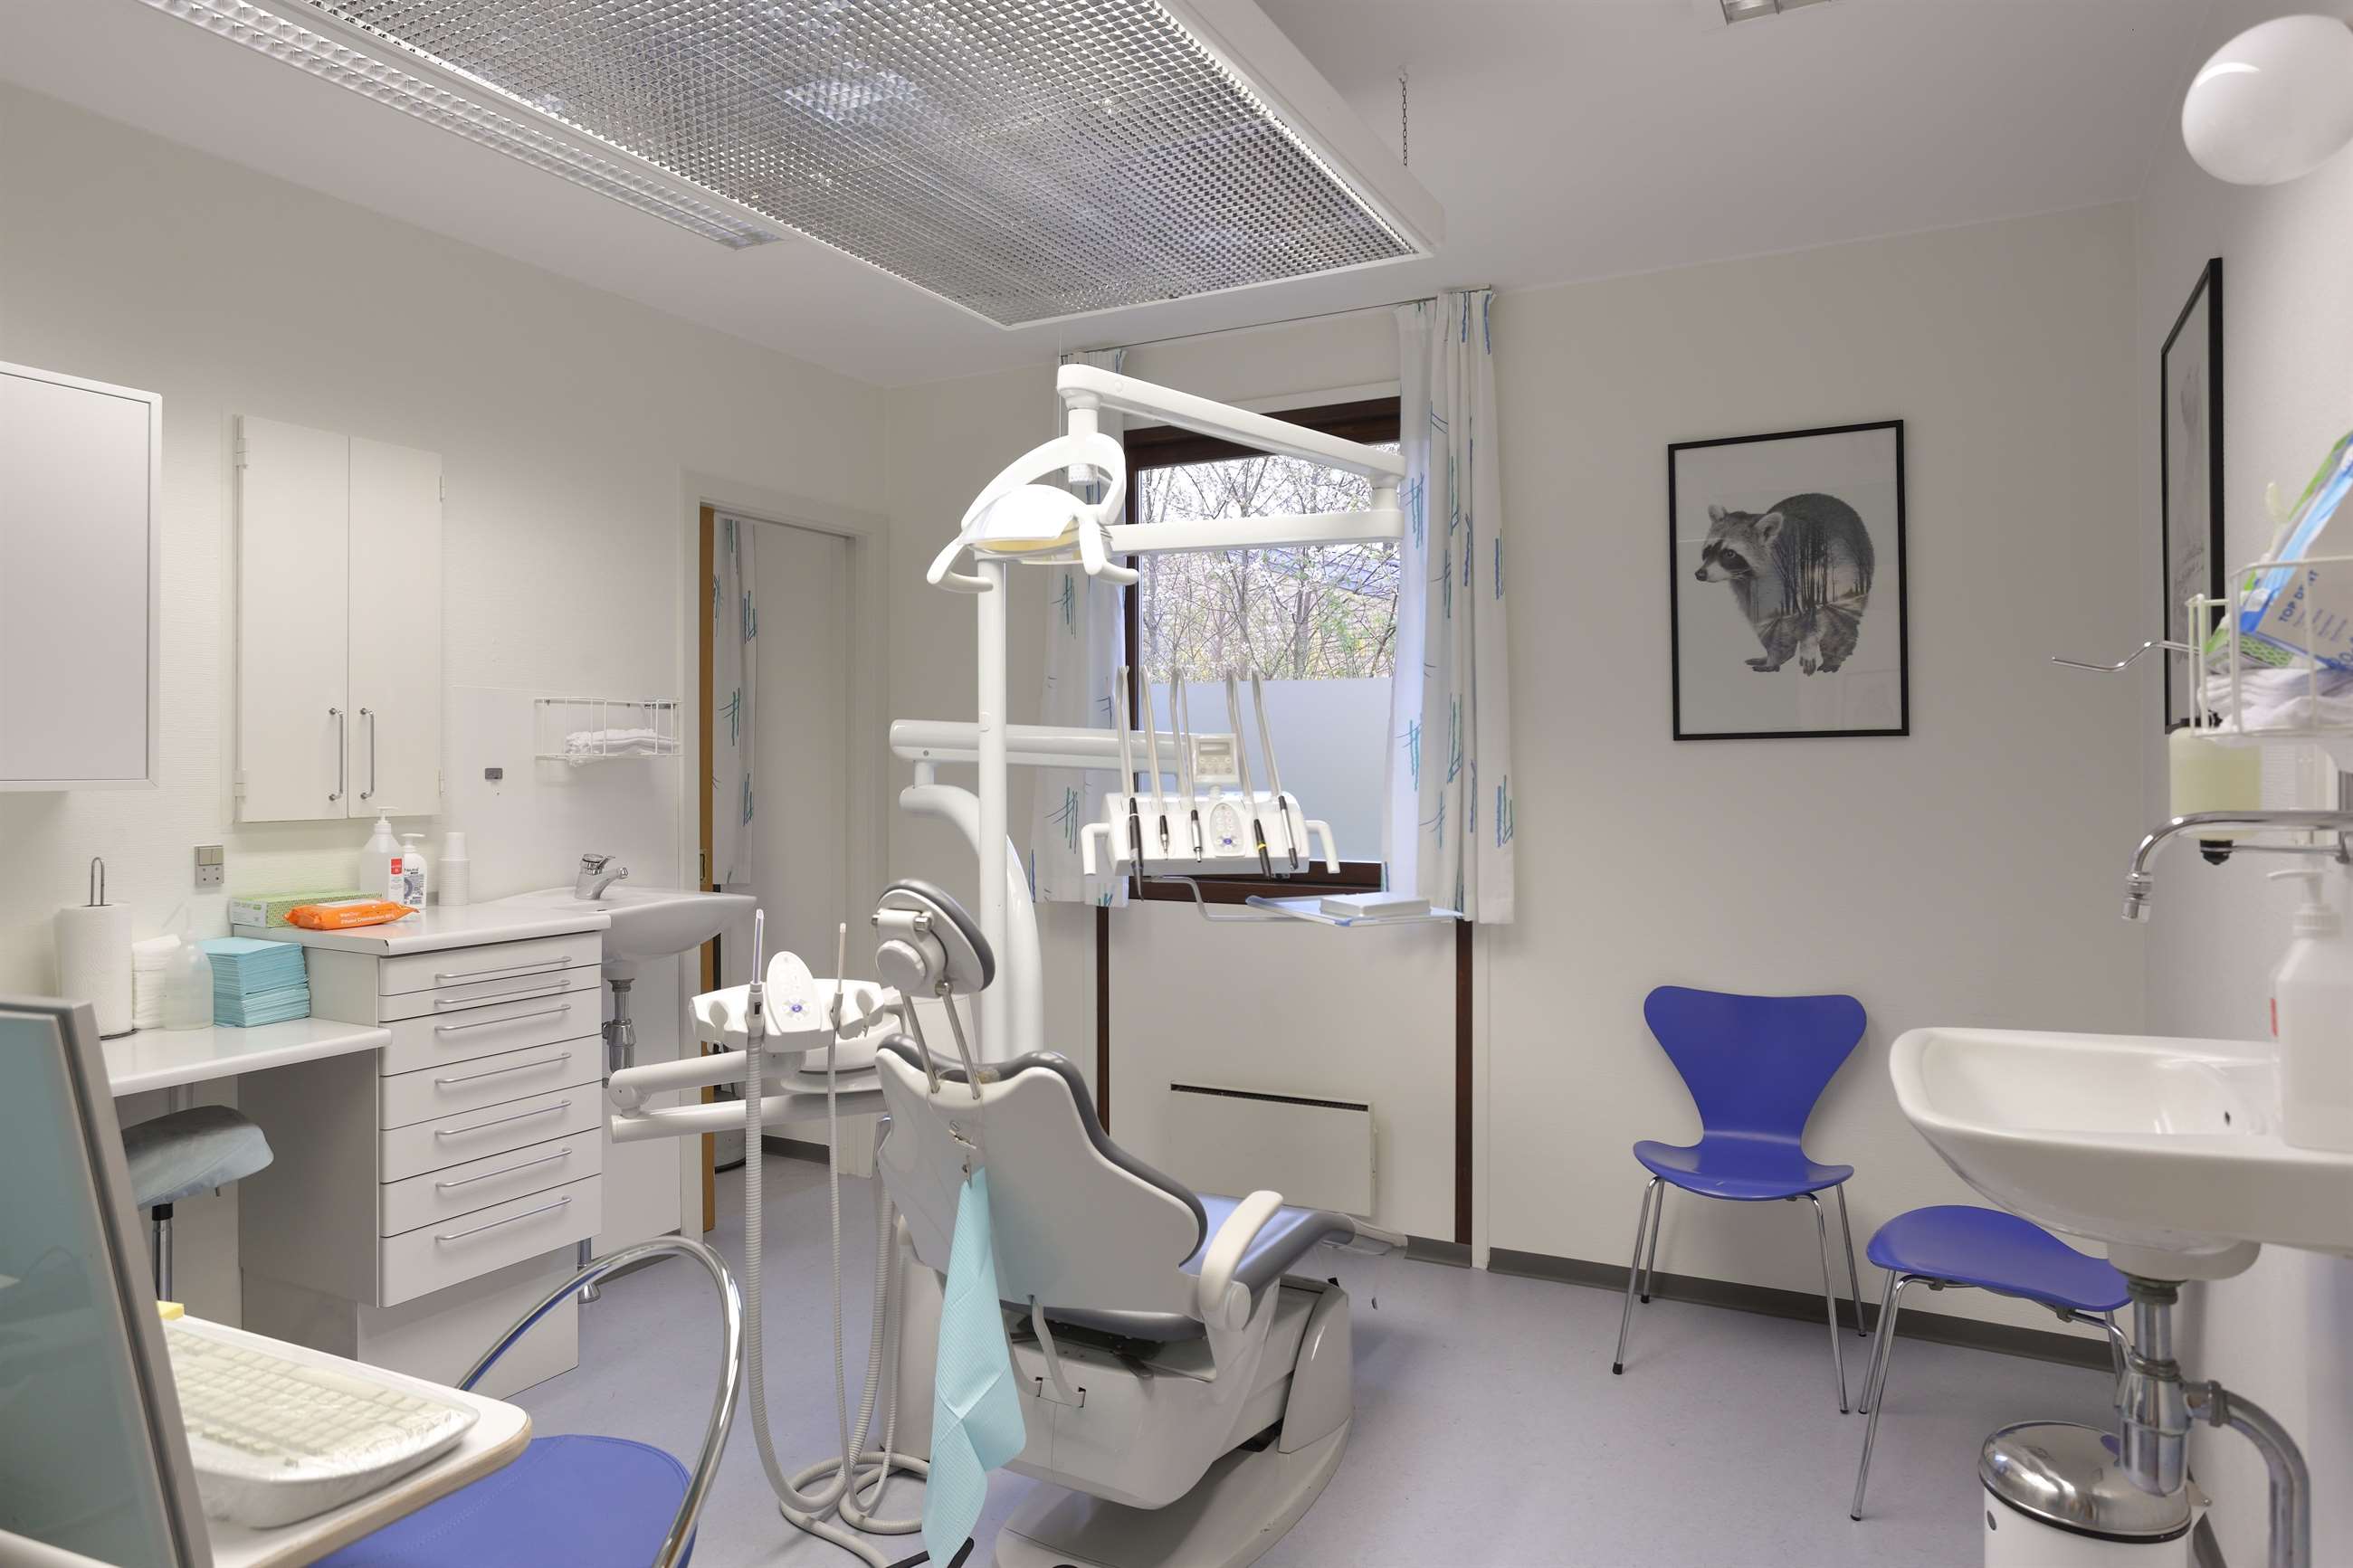 Tandklinik i Viby Sj. med tandlægestol, håndvask og udstyr